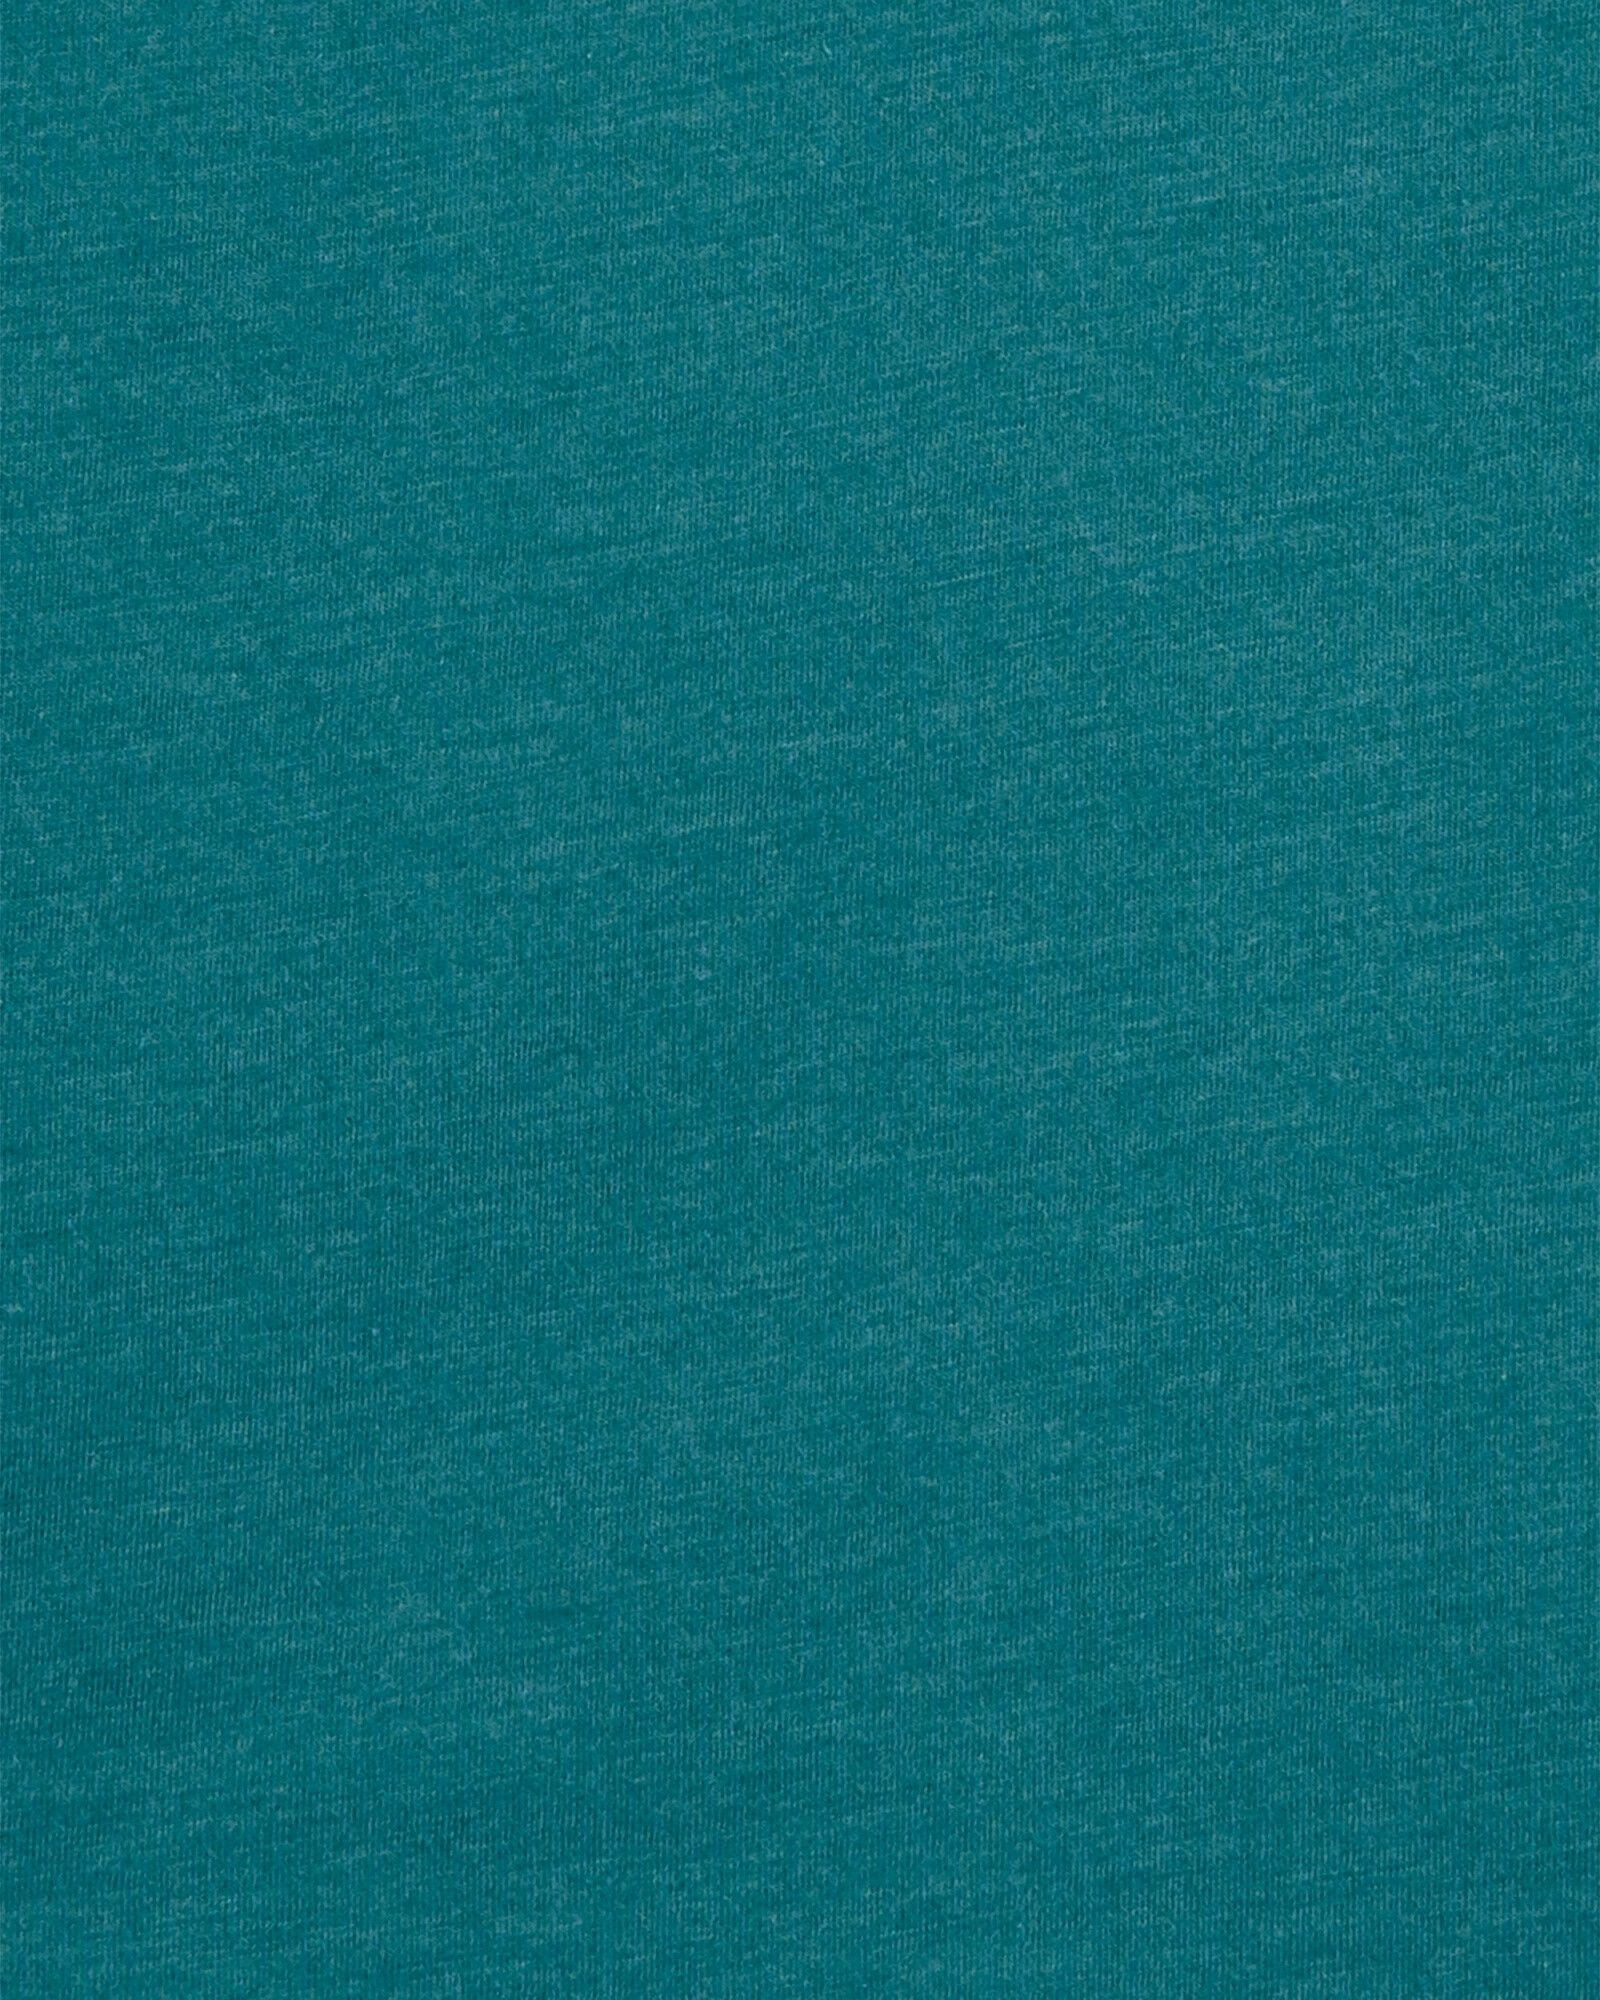 Remera henley de algodón, diseño colorblock. Talles 6-8 Sin color